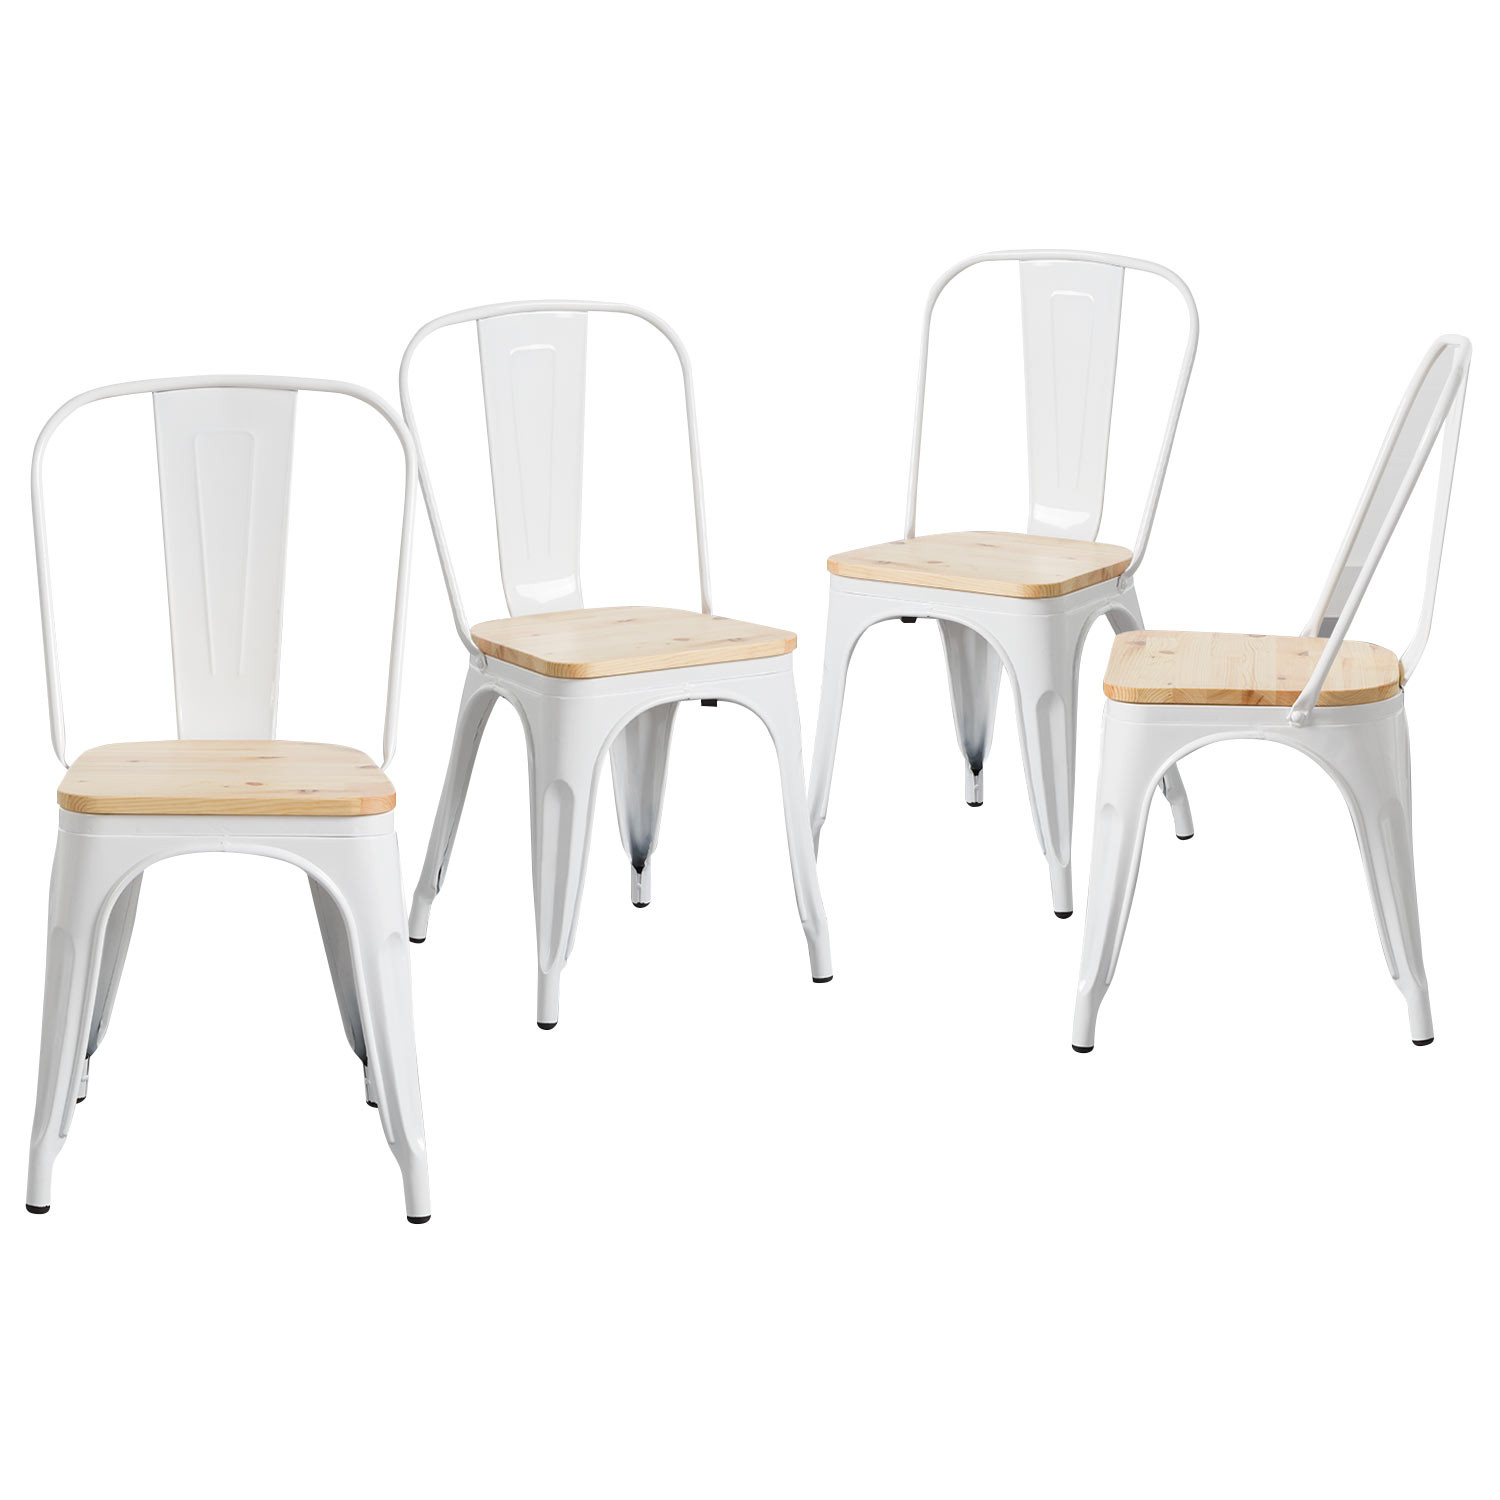 Pack 4 Cadeiras Industriais Fortes com Assento de Madeira 45x54x85cm Thinia Home Packs de Cadeiras 1